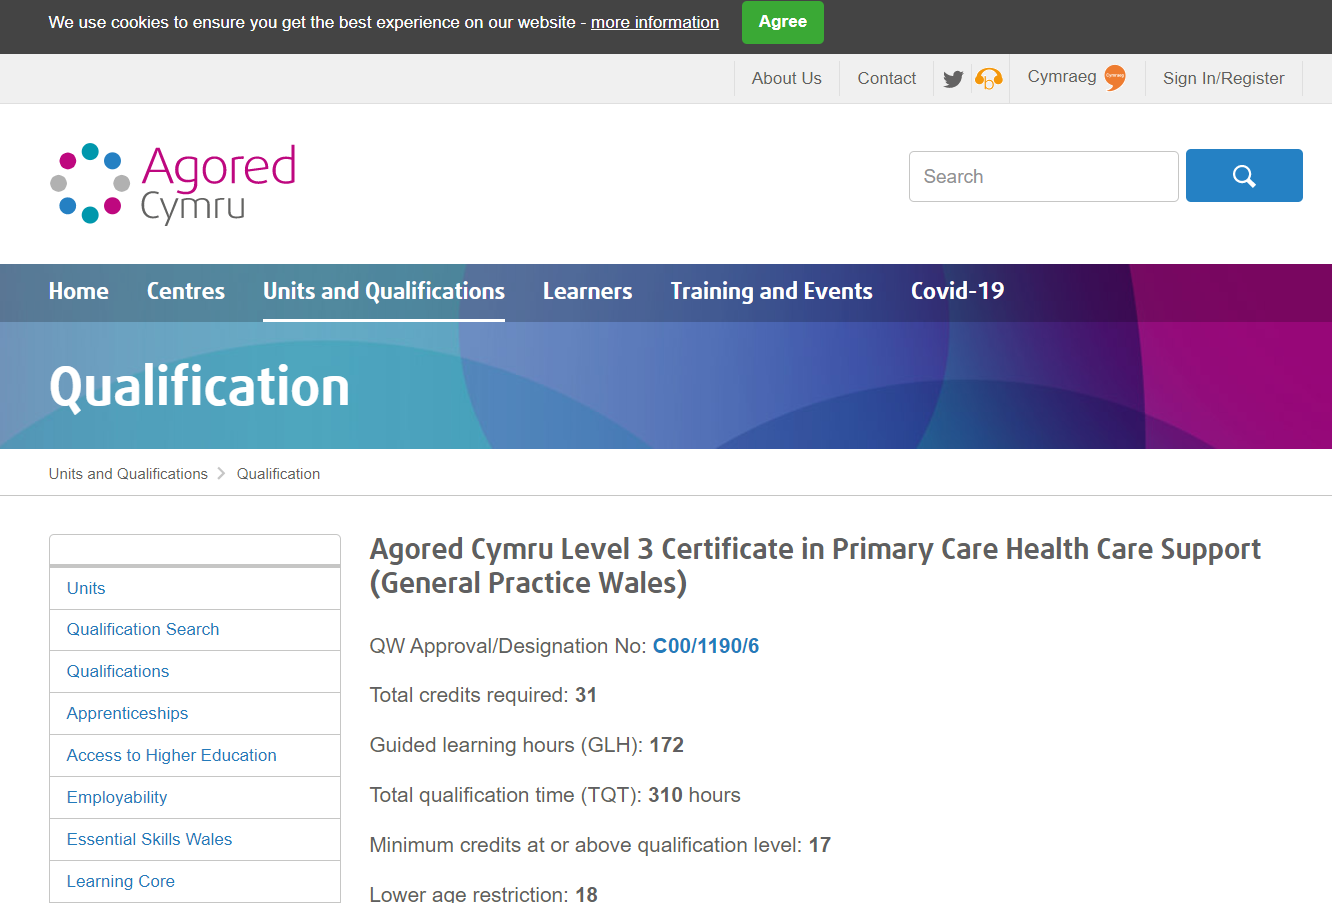 Agored Cymru Level 3 Certificate